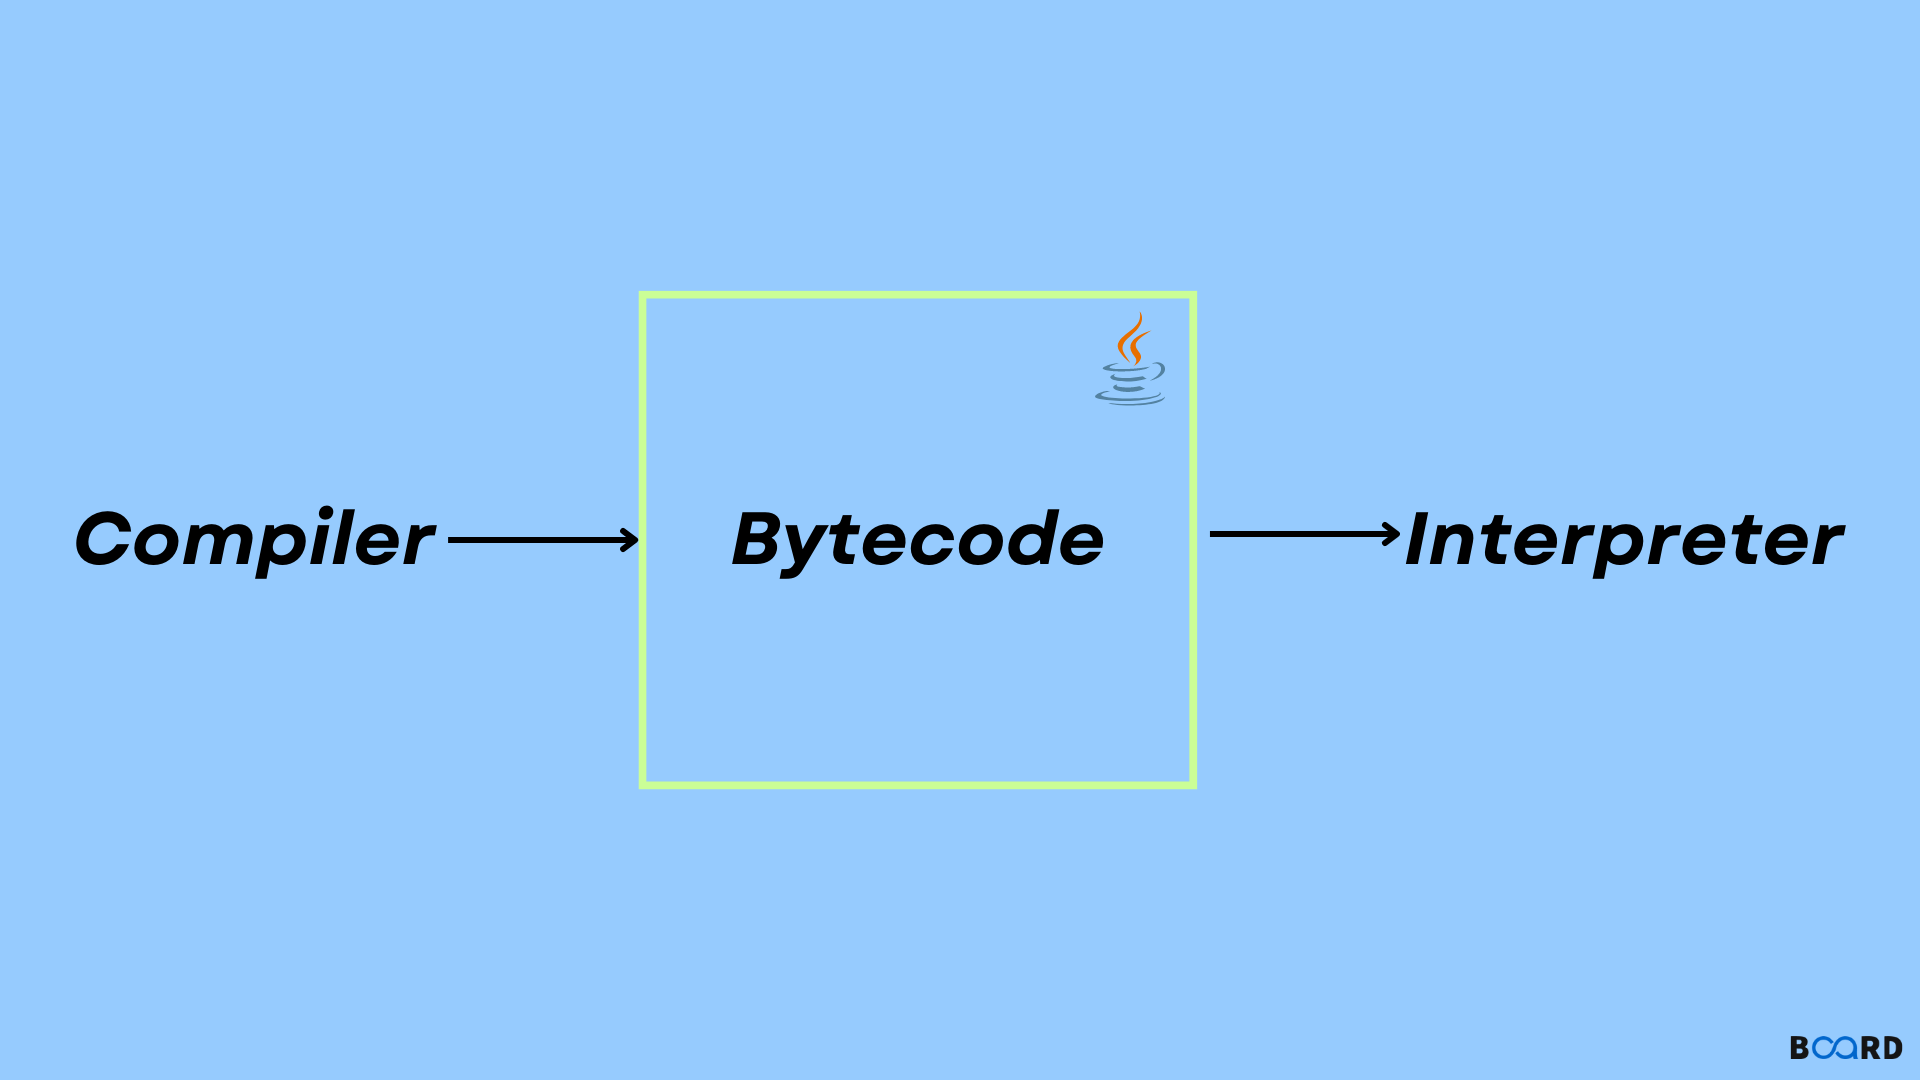 Java Bytecode